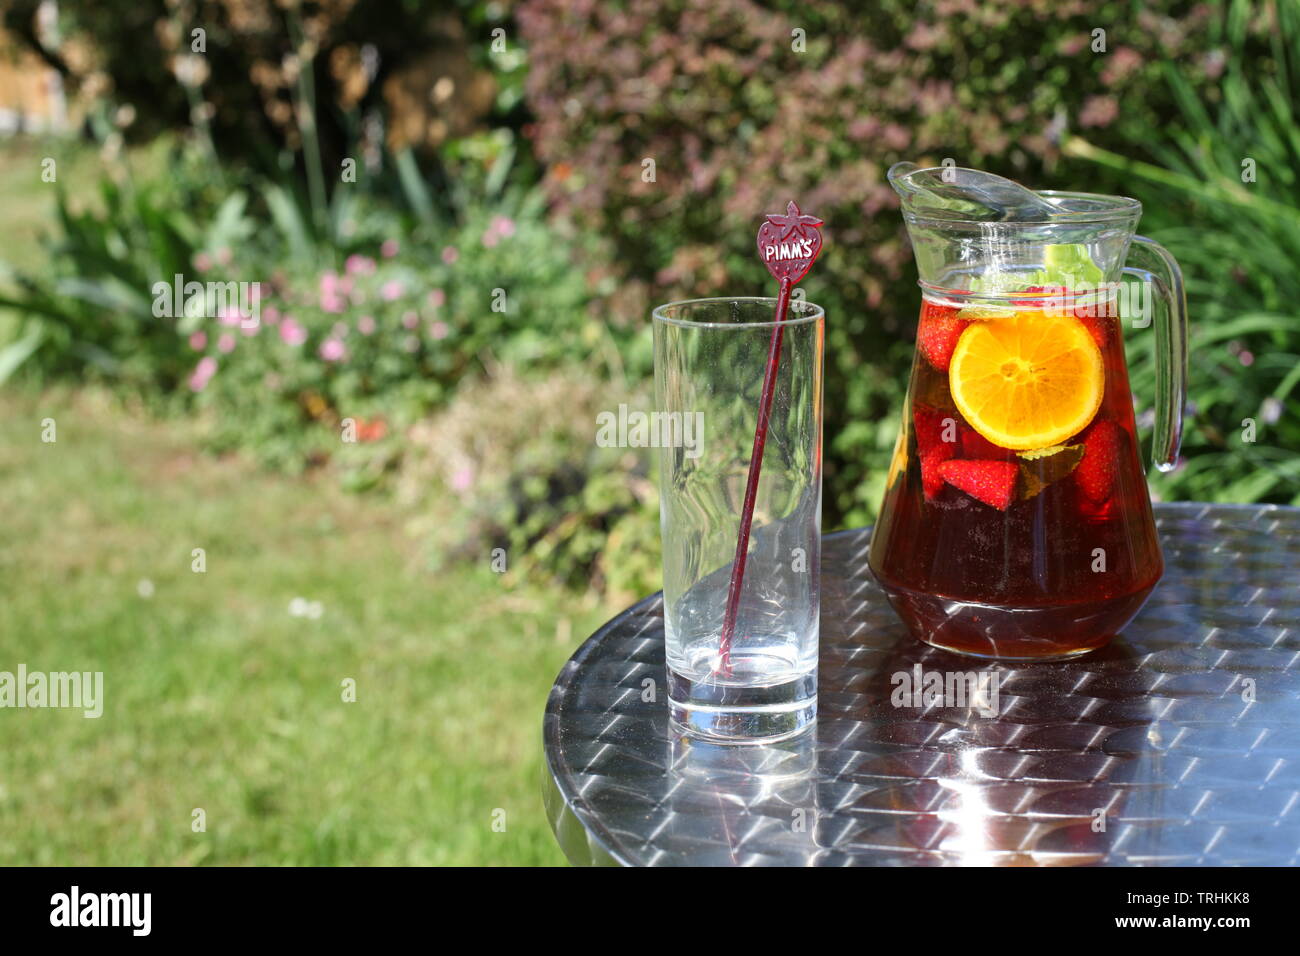 Pichet de Pimms et limonade dehors au soleil avec vide verre avec espace de copie Banque D'Images